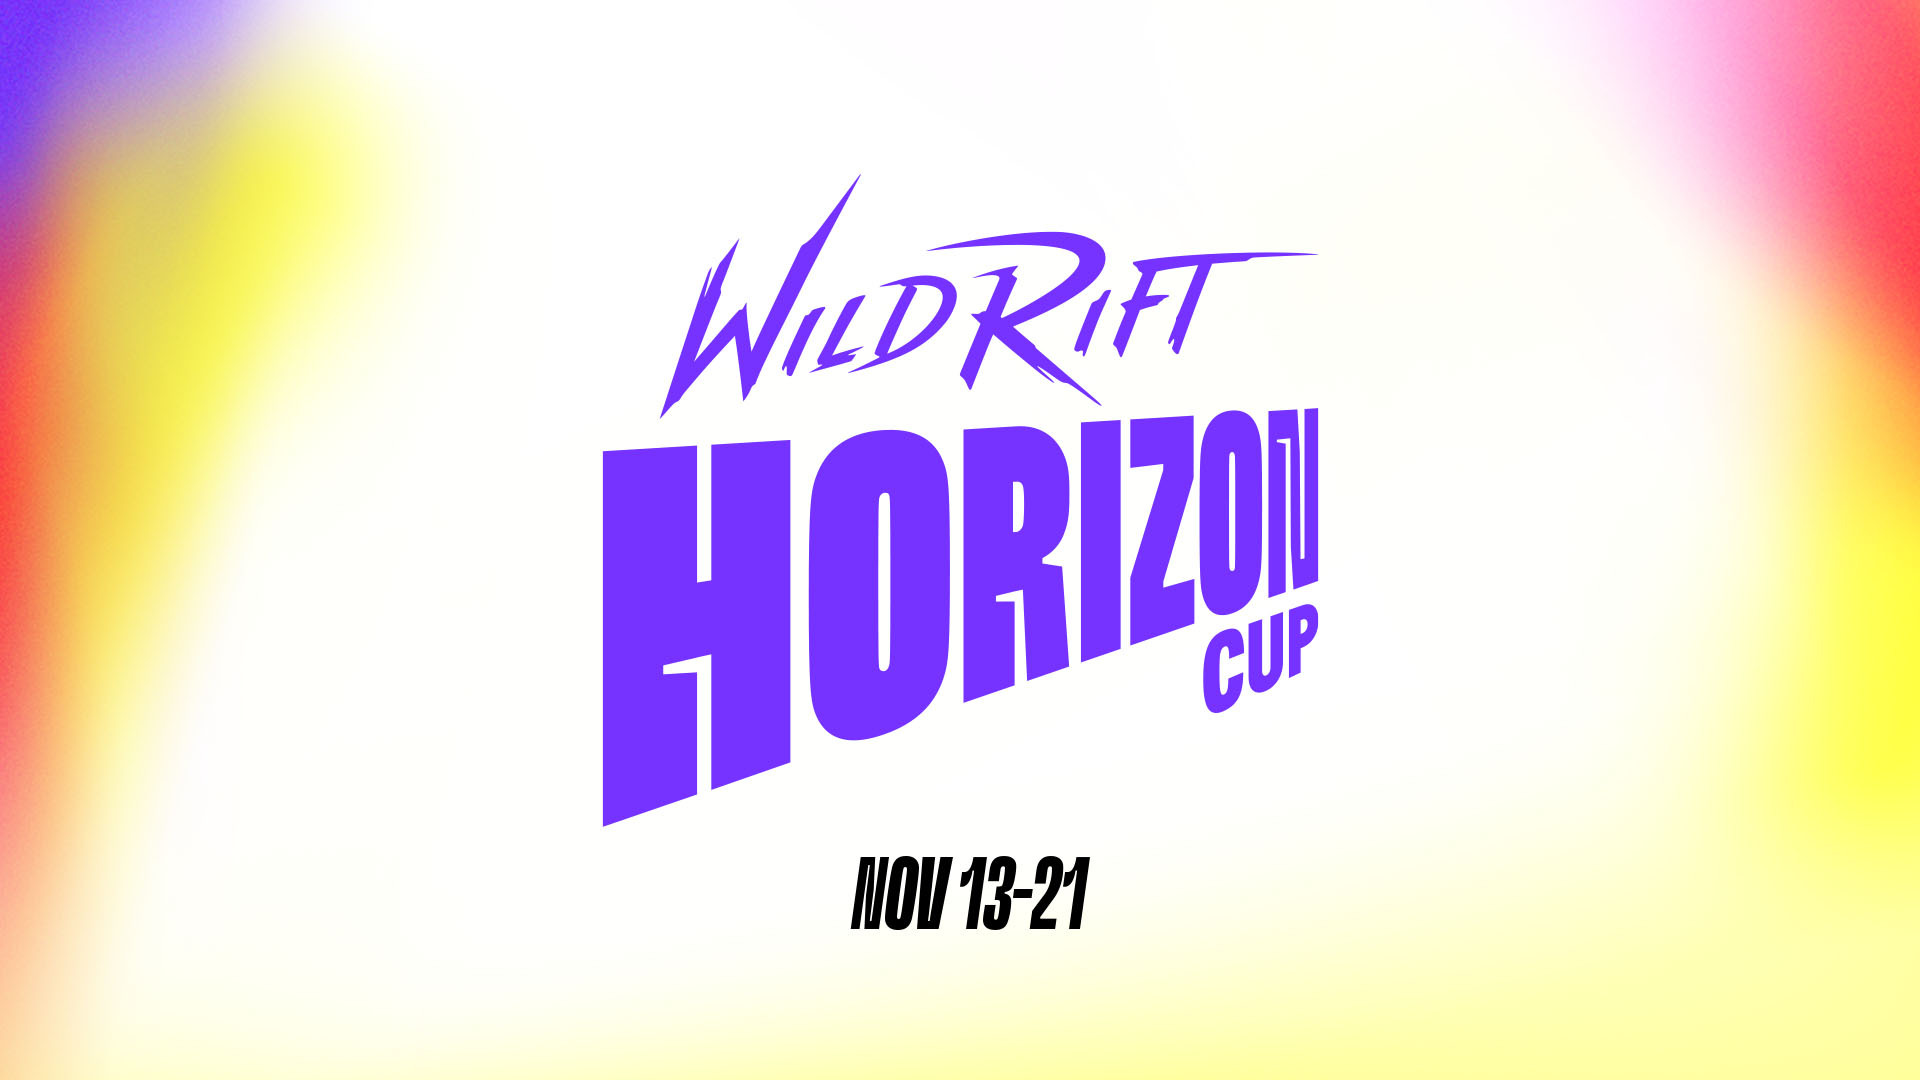 Calendrier des matchs de la Wild Rift Horizon Cup